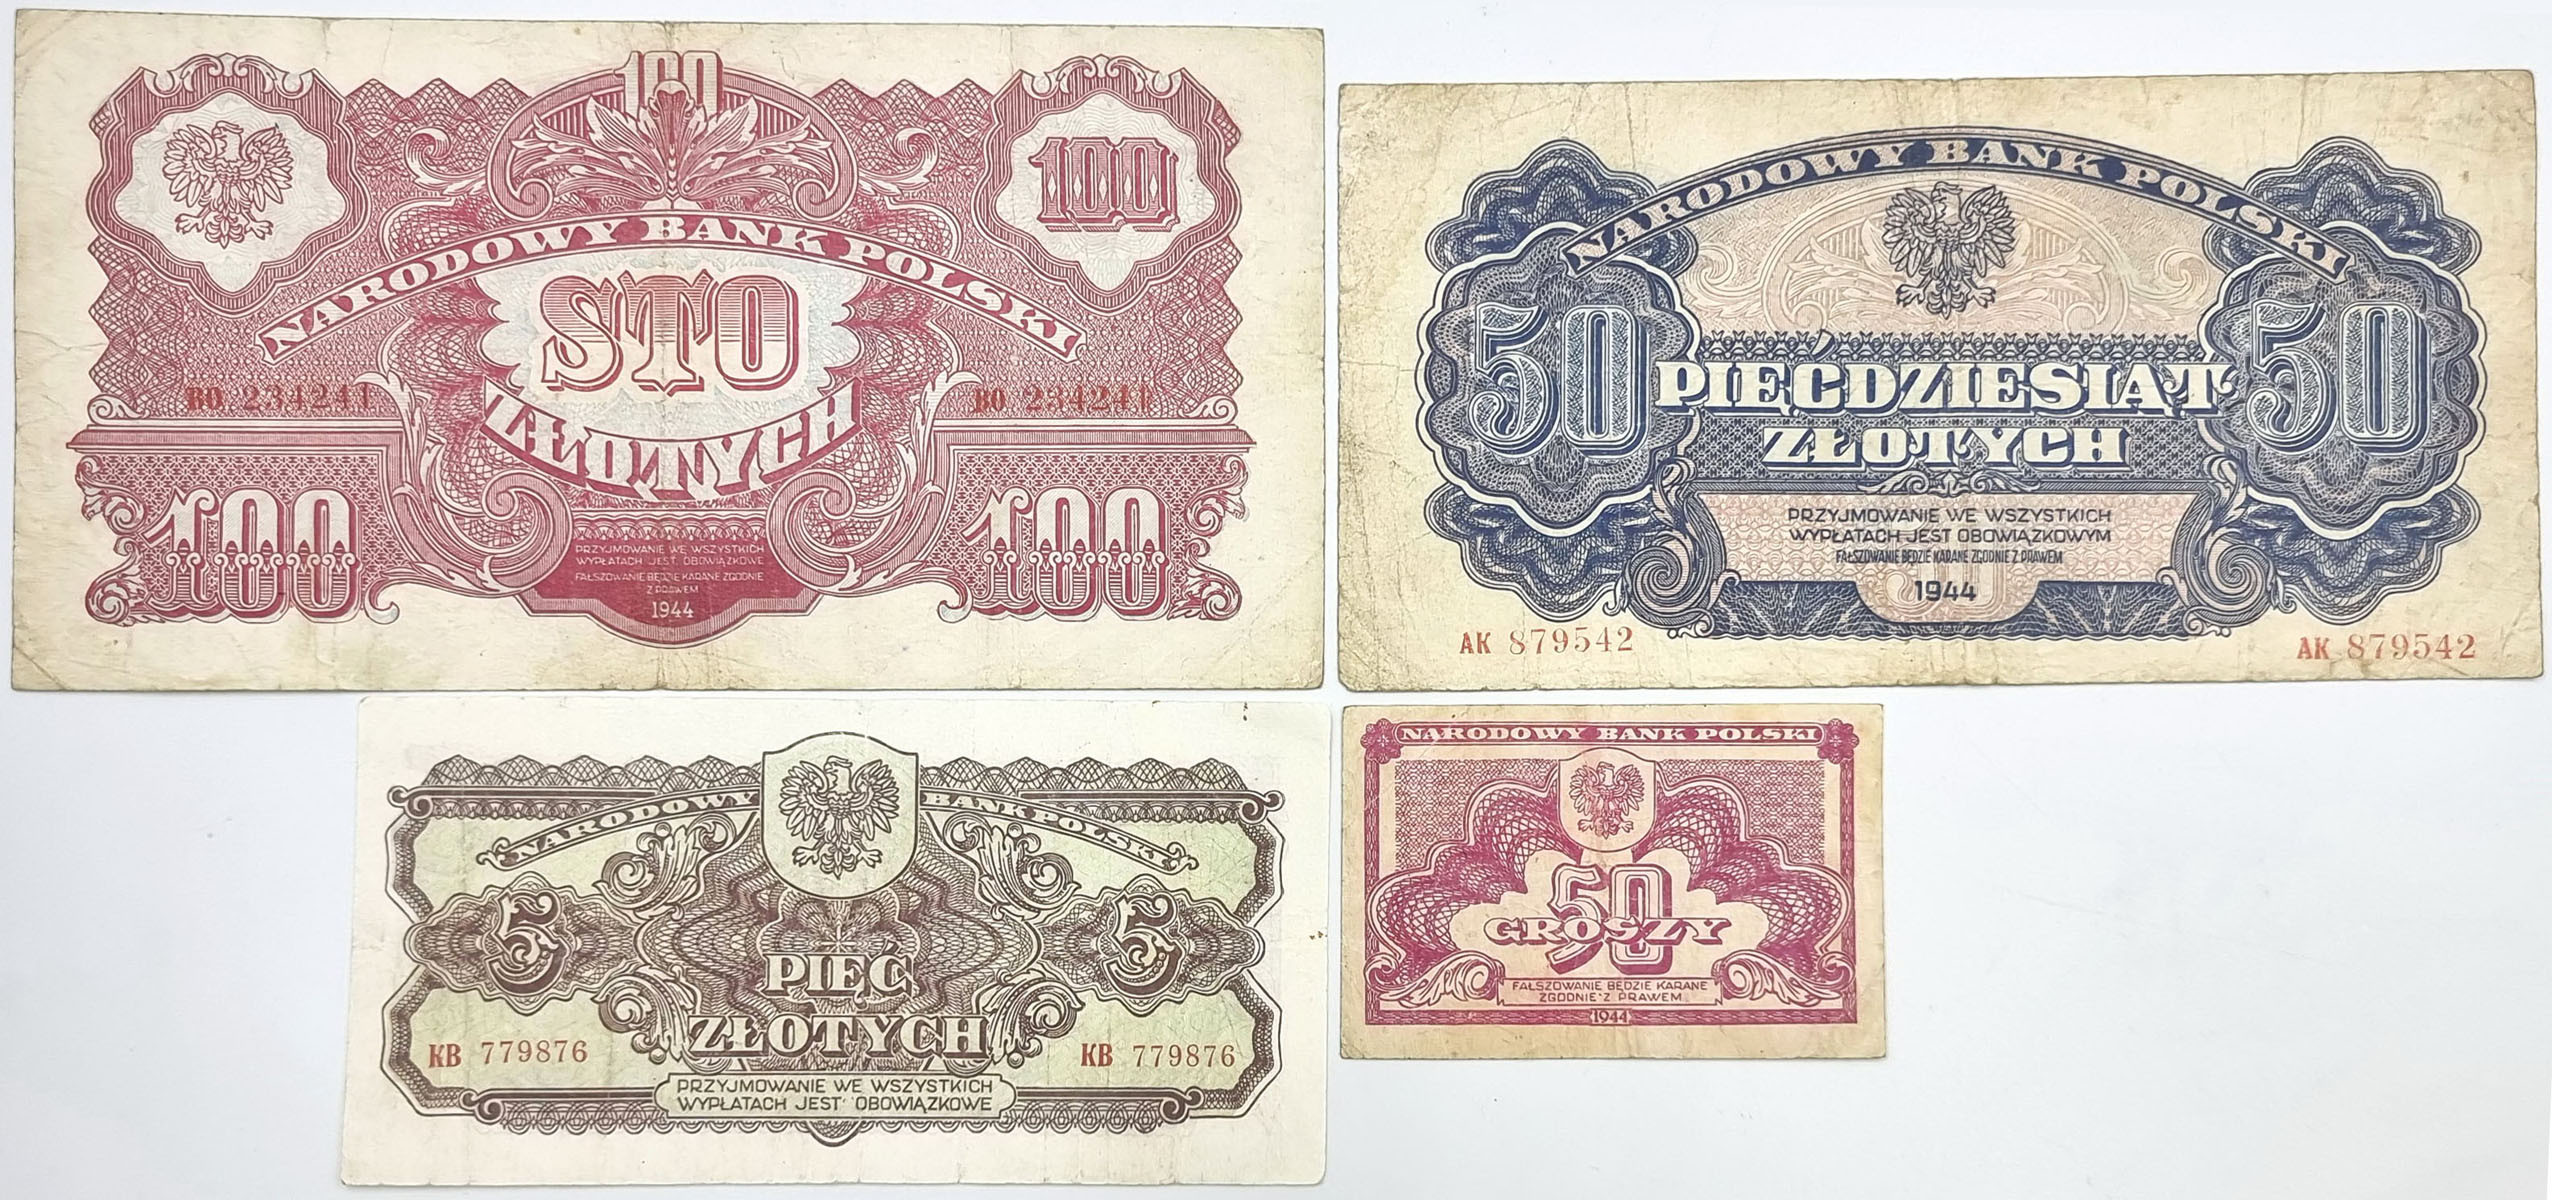 50 groszy do 100 złotych 1944, zestaw 4 banknotów